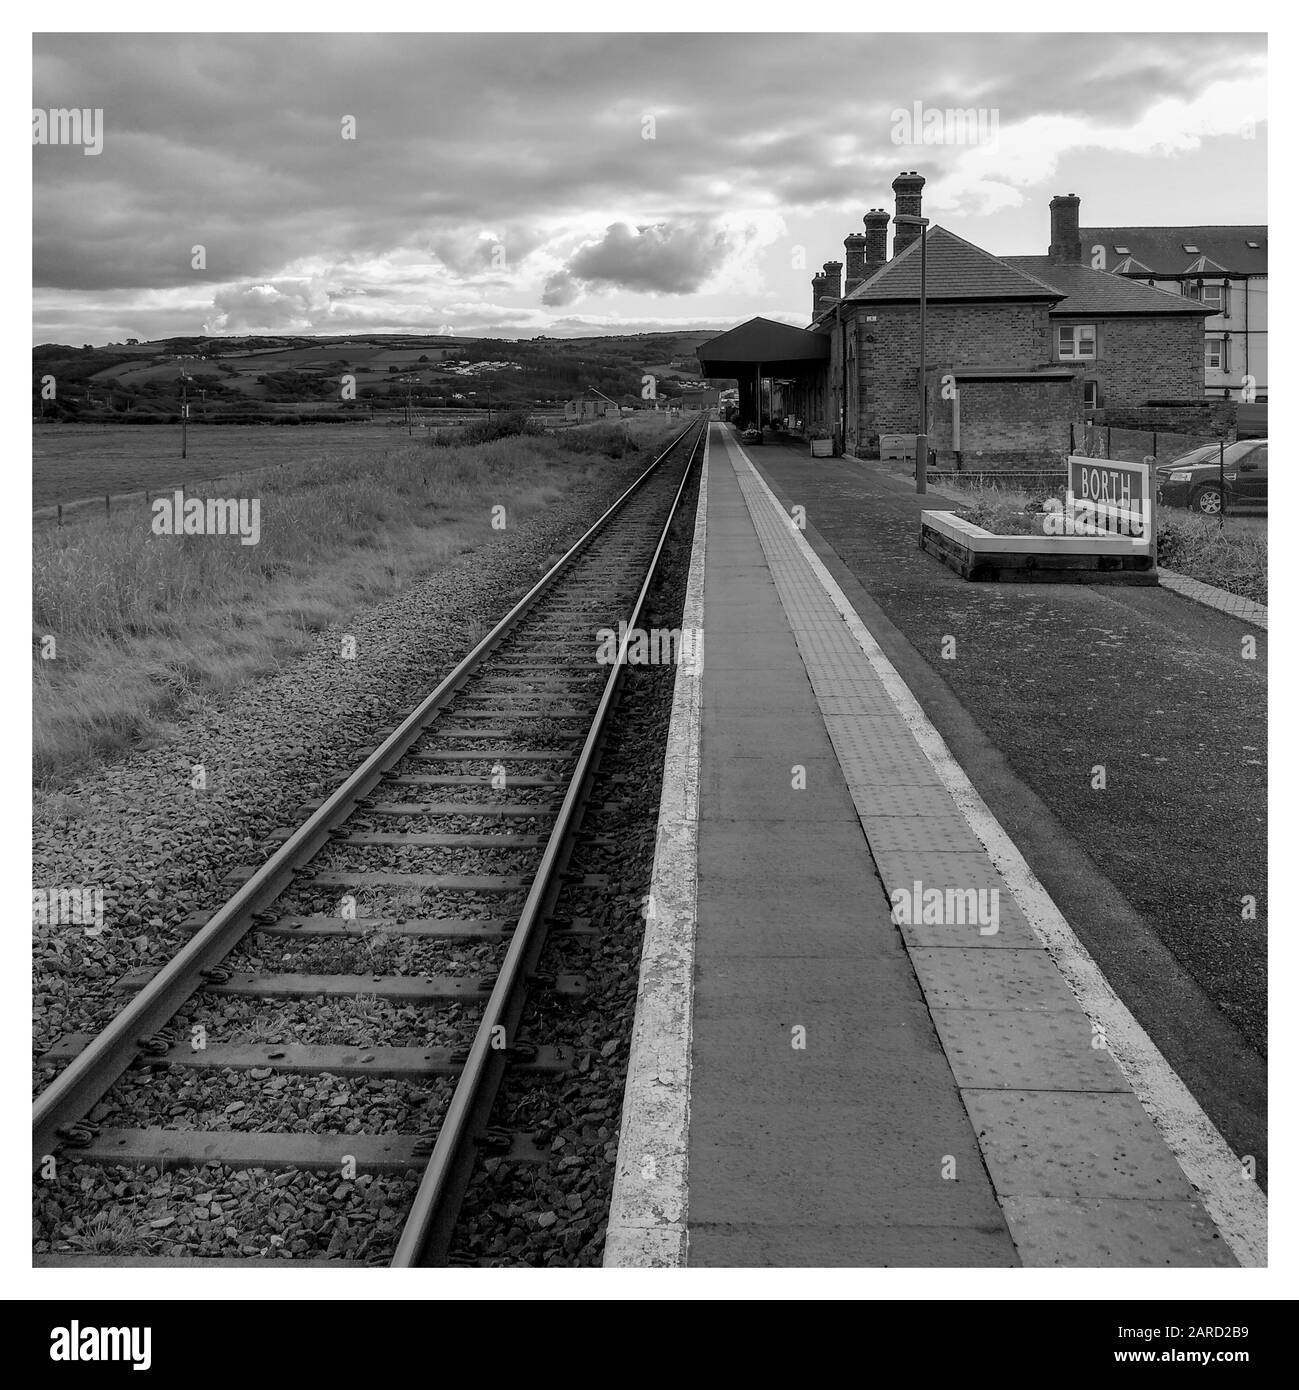 Bianco e nero [monocromatico] di una stazione ferroviaria di Borth deserta, piste che scompaiono all'orizzonte. Nuvole d'atmosfera e una cornice bianca tradizionale Foto Stock